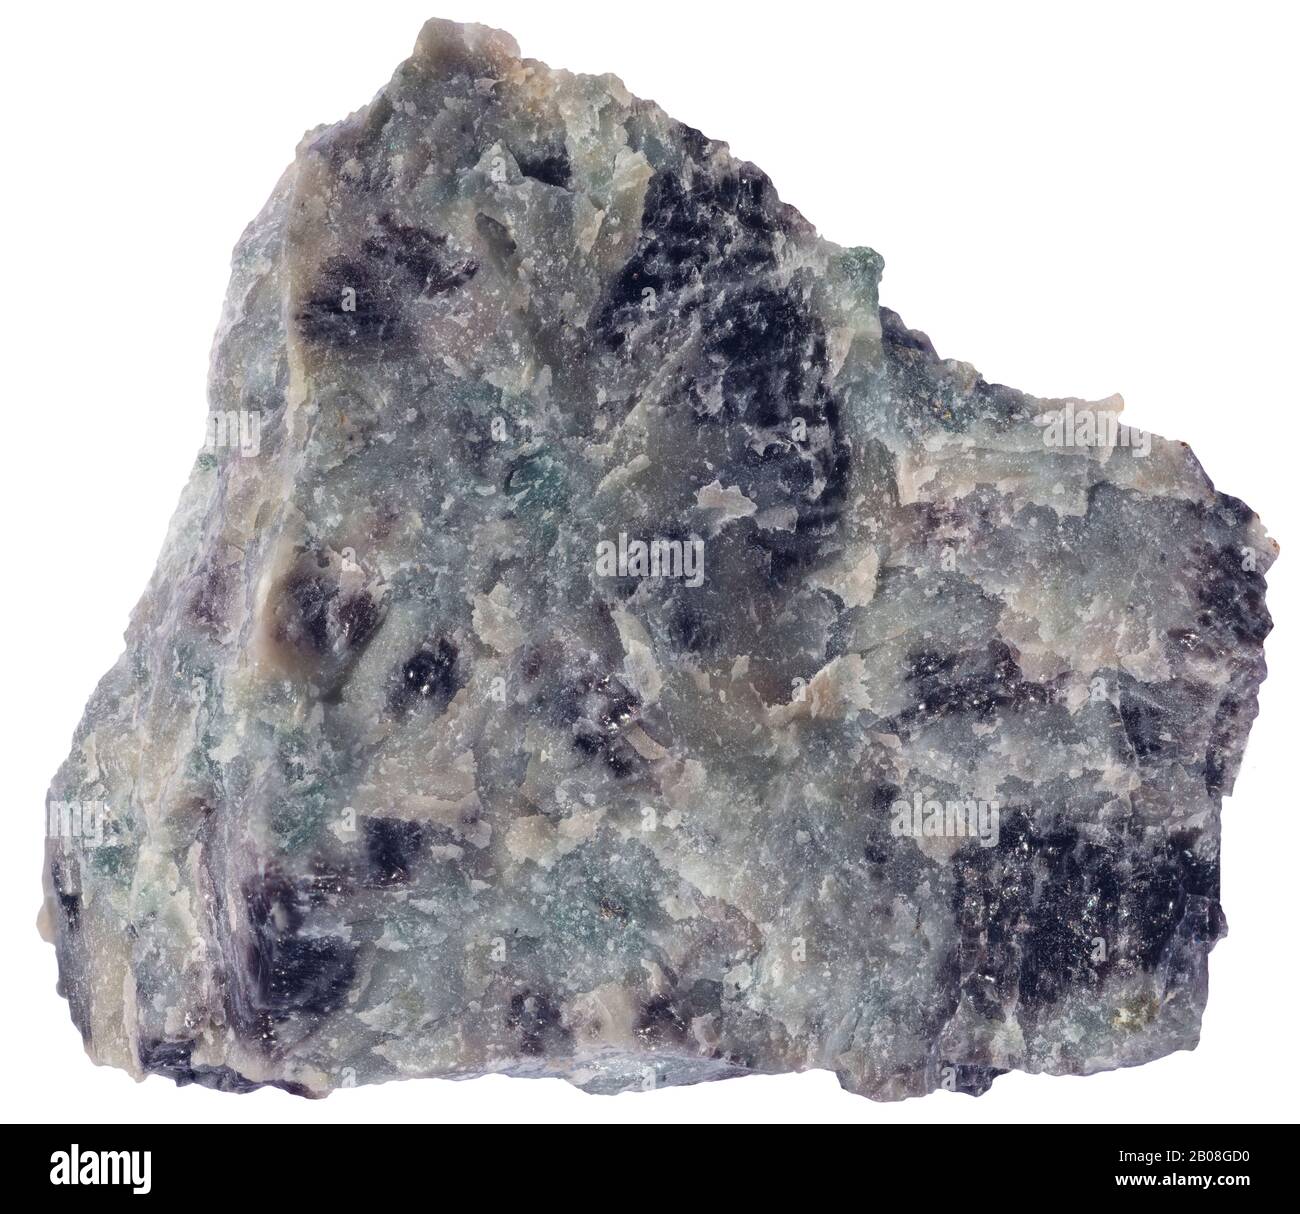 Neptheline Sienite, Magmatic, Mt St Hilaire, Quebec Nepheline sienite è una roccia plutonica hocristallina che consiste in gran parte di nepfelina e alcali Foto Stock